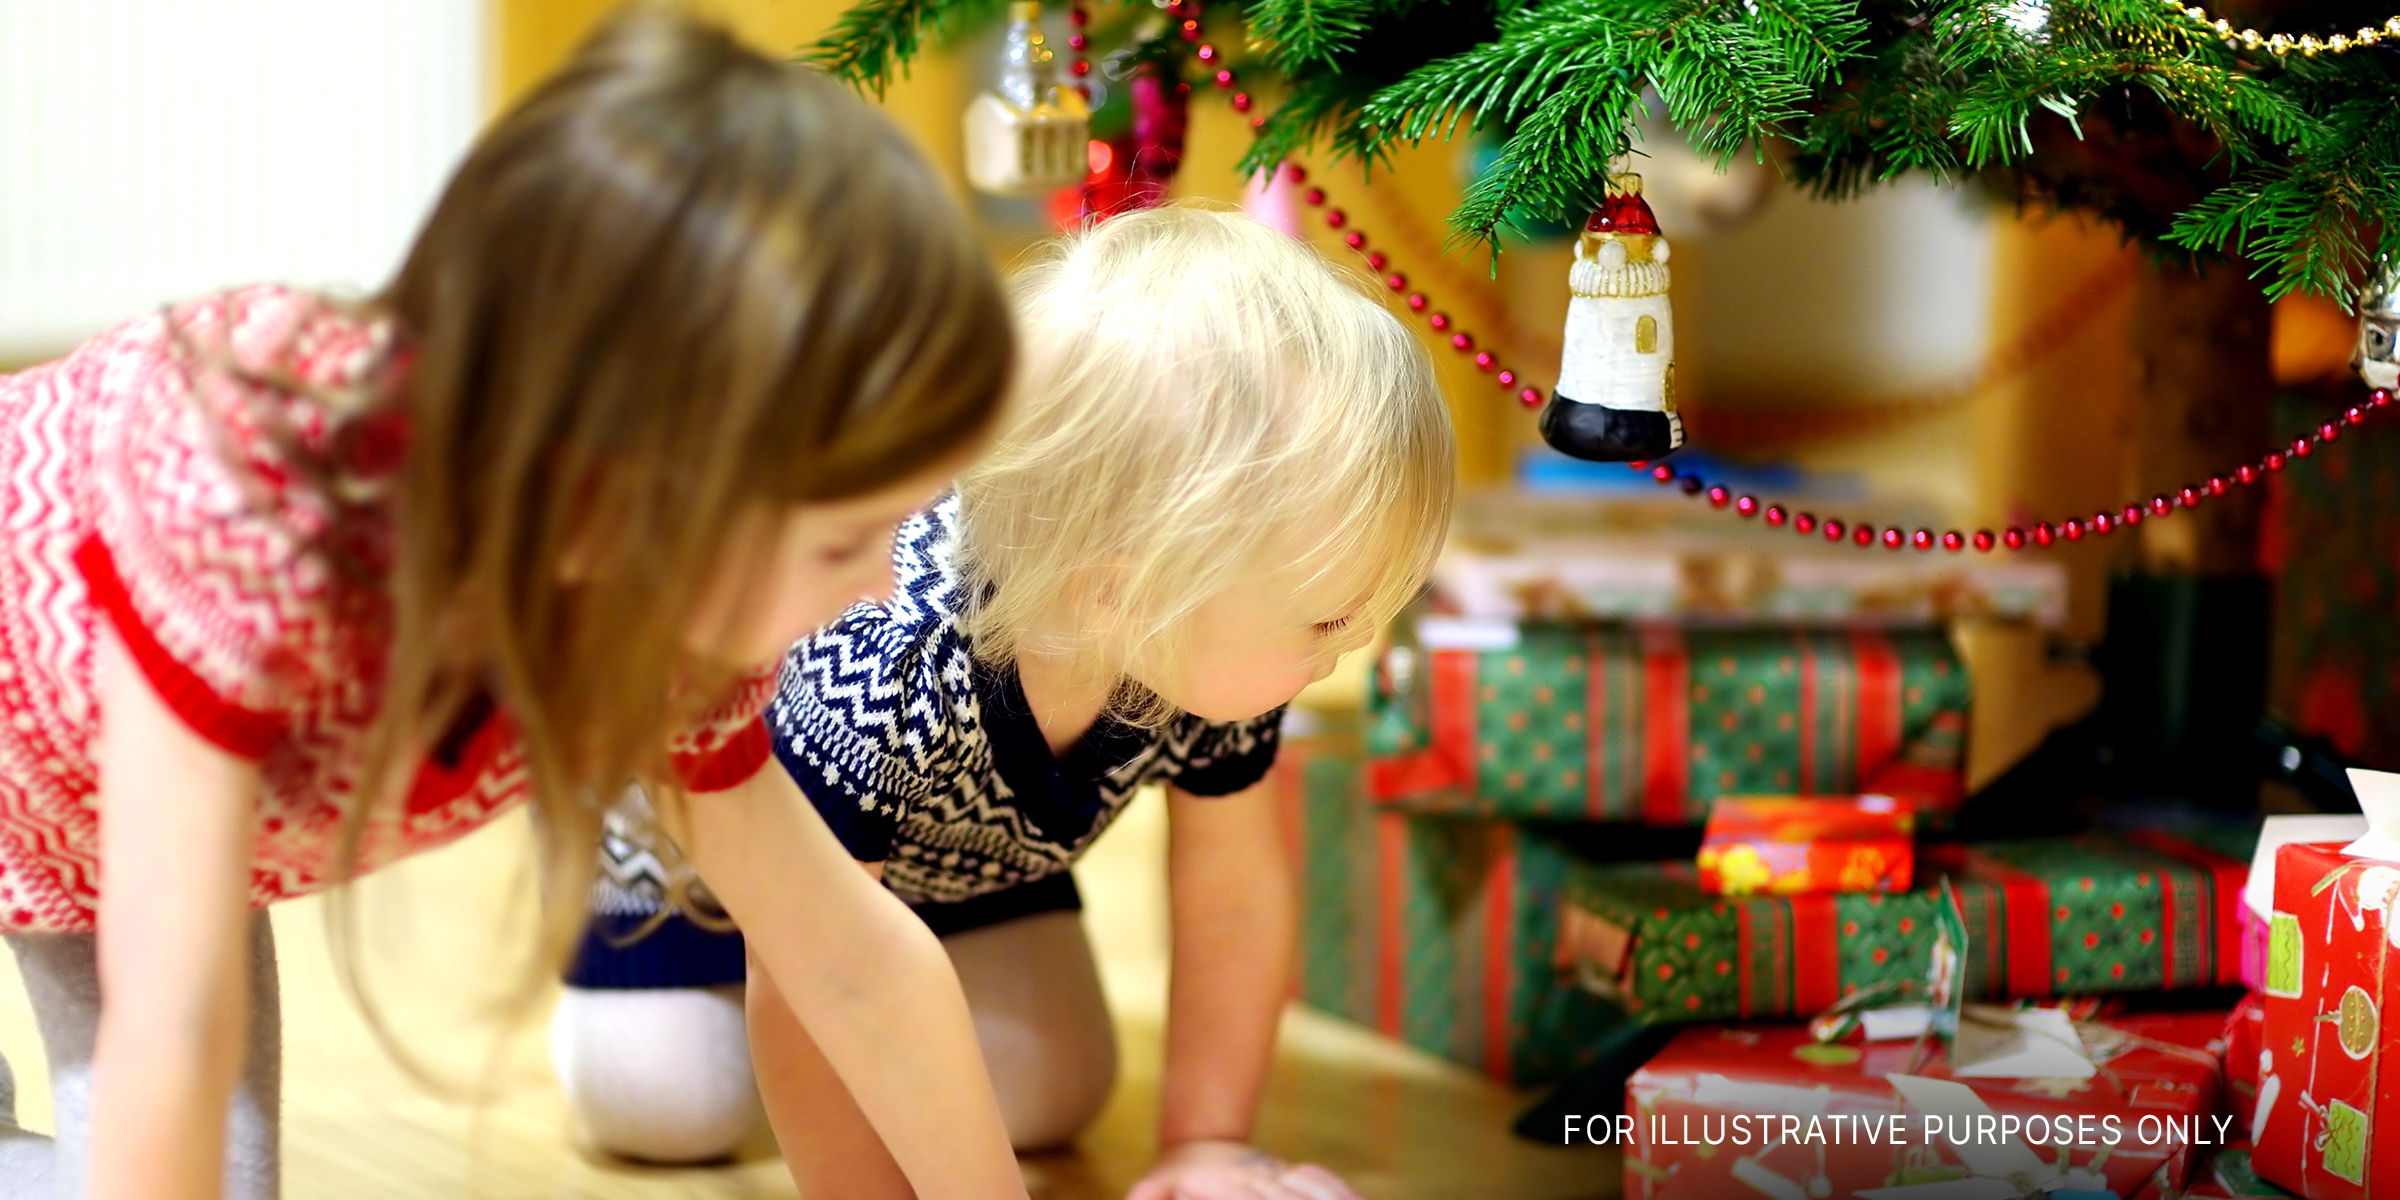 Kinder betrachten die Geschenke unter dem Weihnachtsbaum | Quelle: Shutterstock